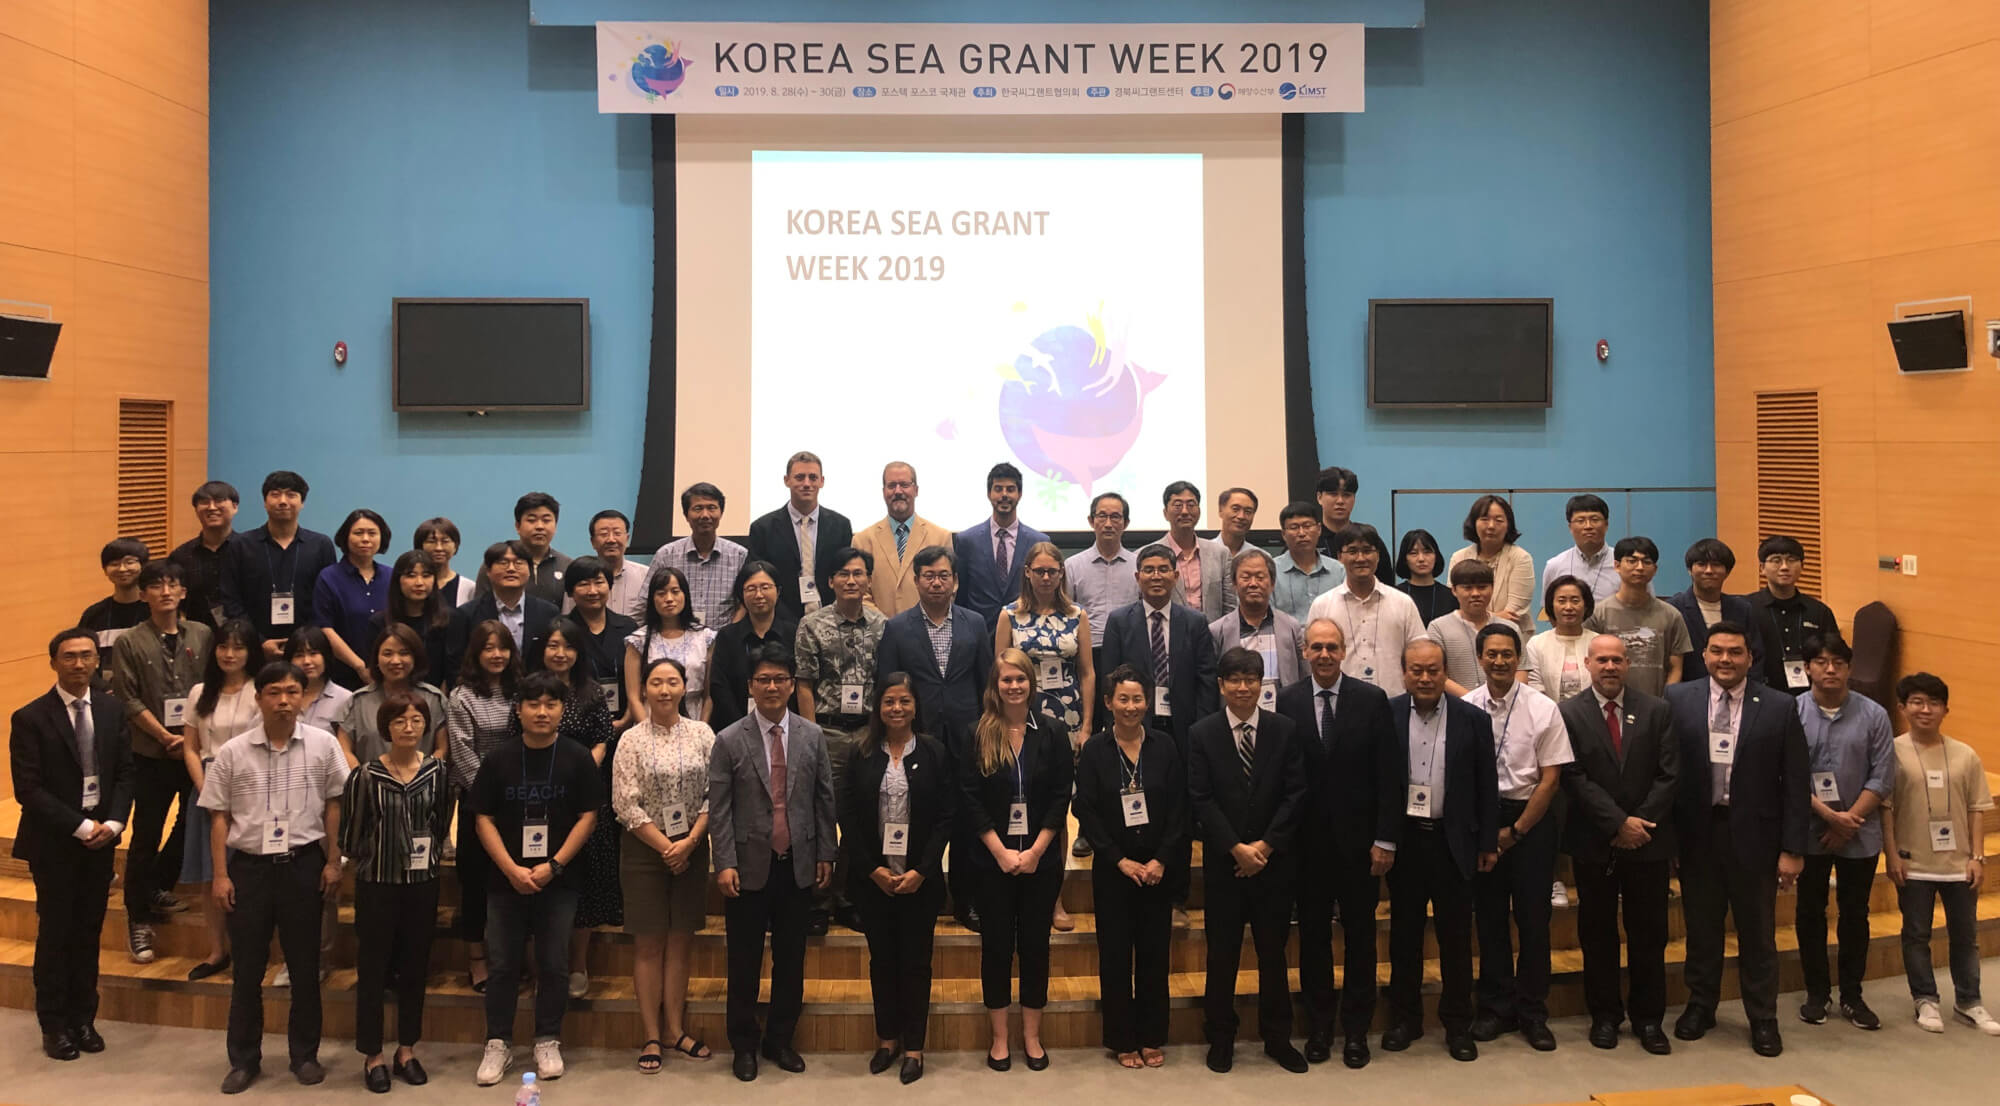 Korea Sea Grant Week 2019 Participants